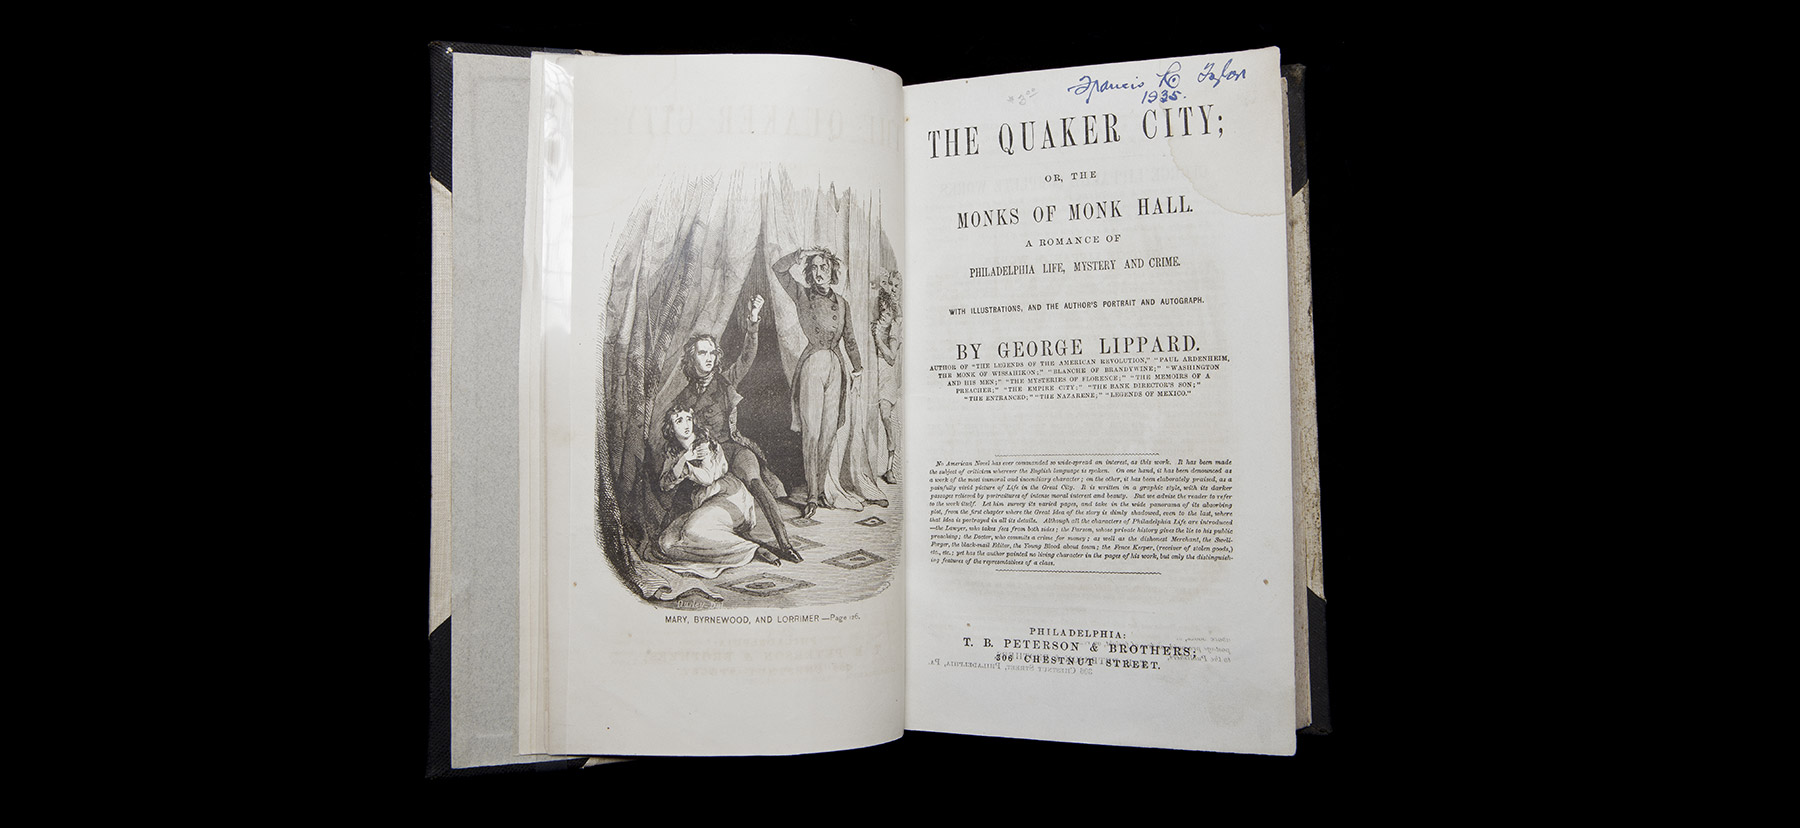 The book The Quaker City interior